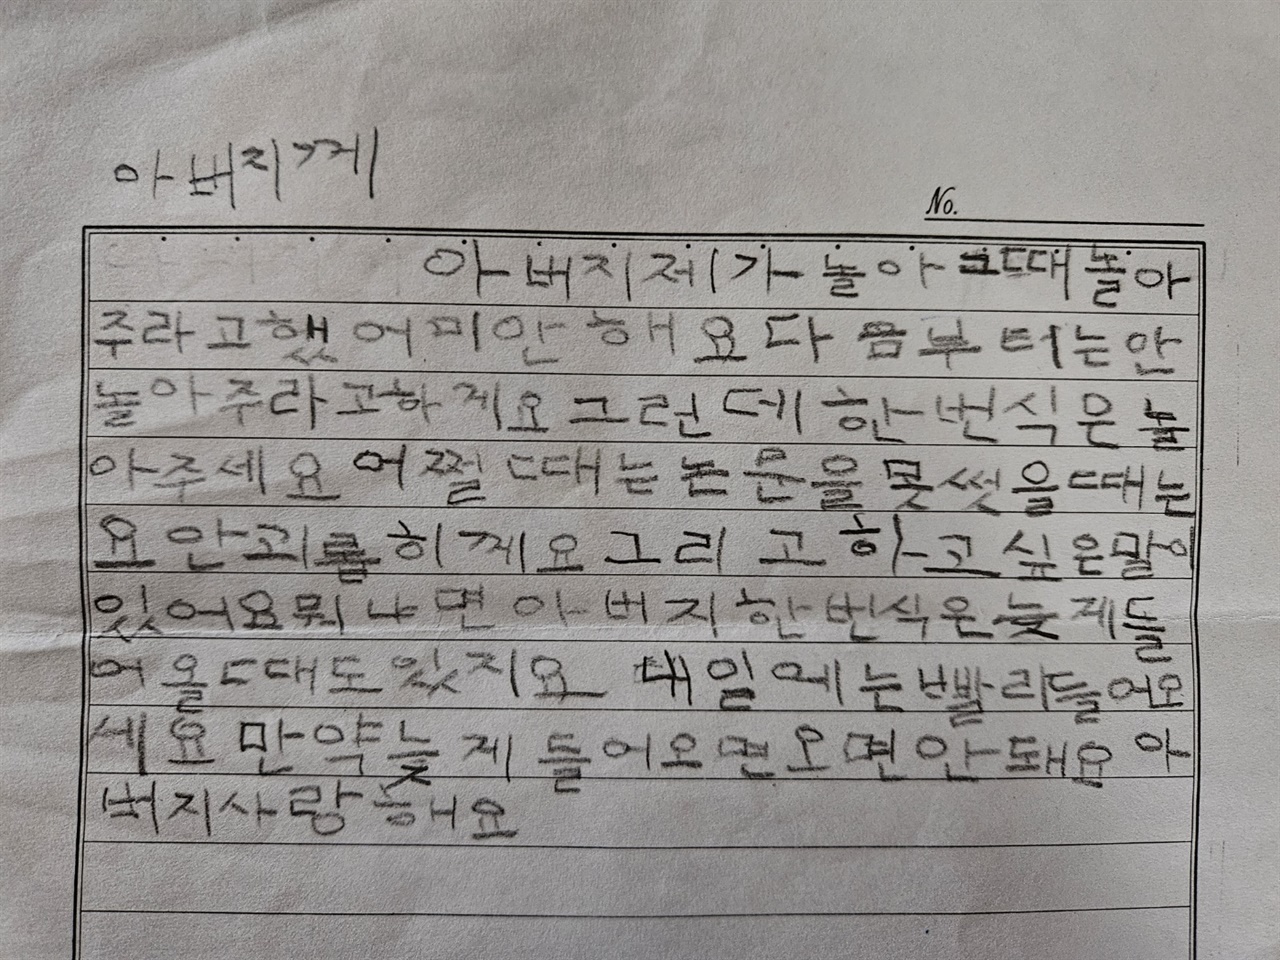 아들이 초등학교 1학년에 갓 입학하여 아버지인 필자한테 보낸 편지이다.